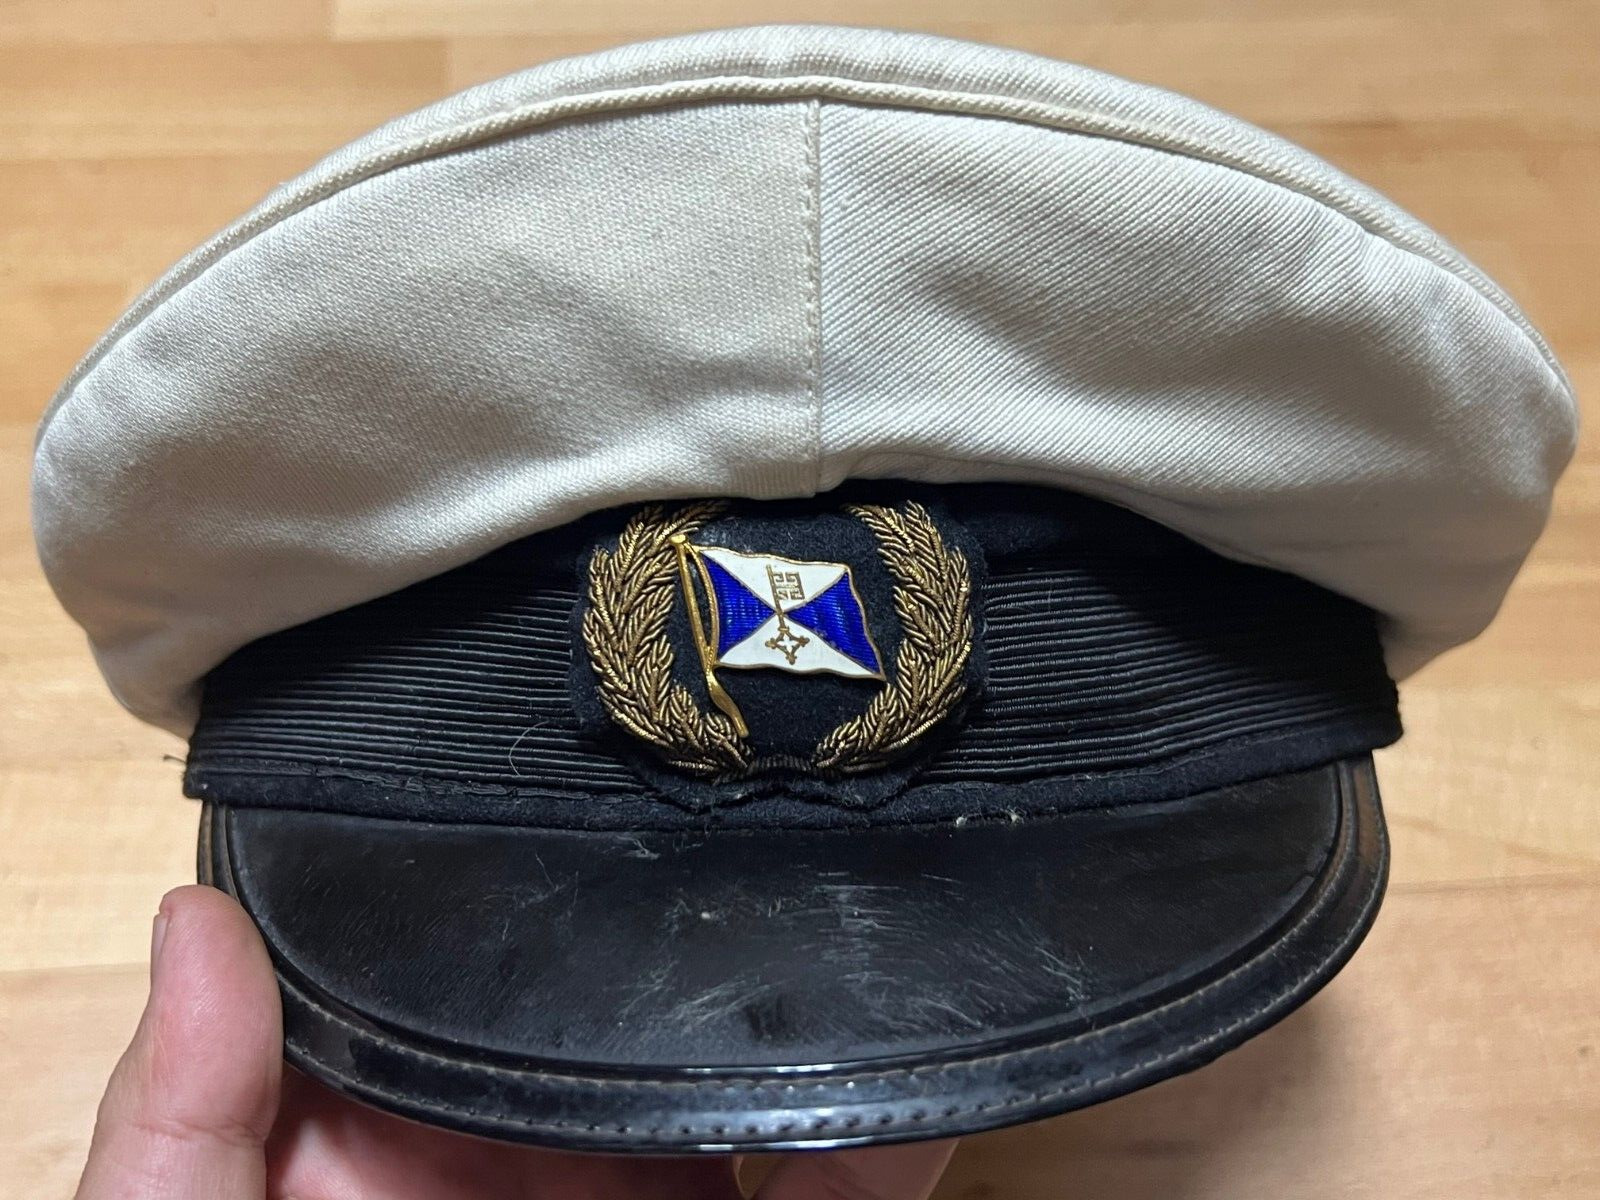 ANTIQUE Hamburg America line Officer's cap 1910-20s